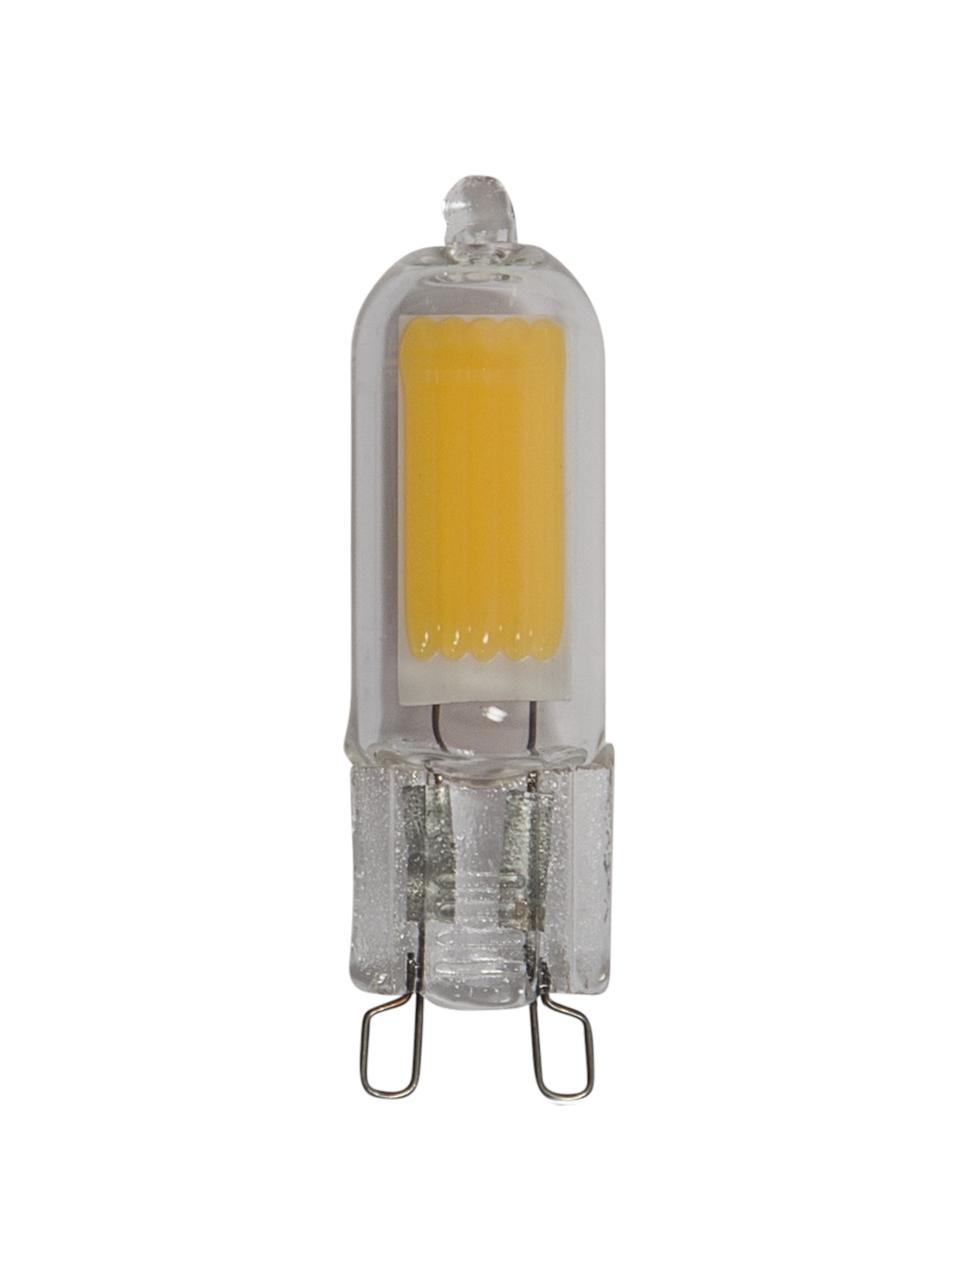 G9 Leuchtmittel, 200lm, warmweiss, 3 Stück, Leuchtmittelschirm: Glas, Leuchtmittelfassung: Glas, Transparent, Ø 1 x H 5 cm